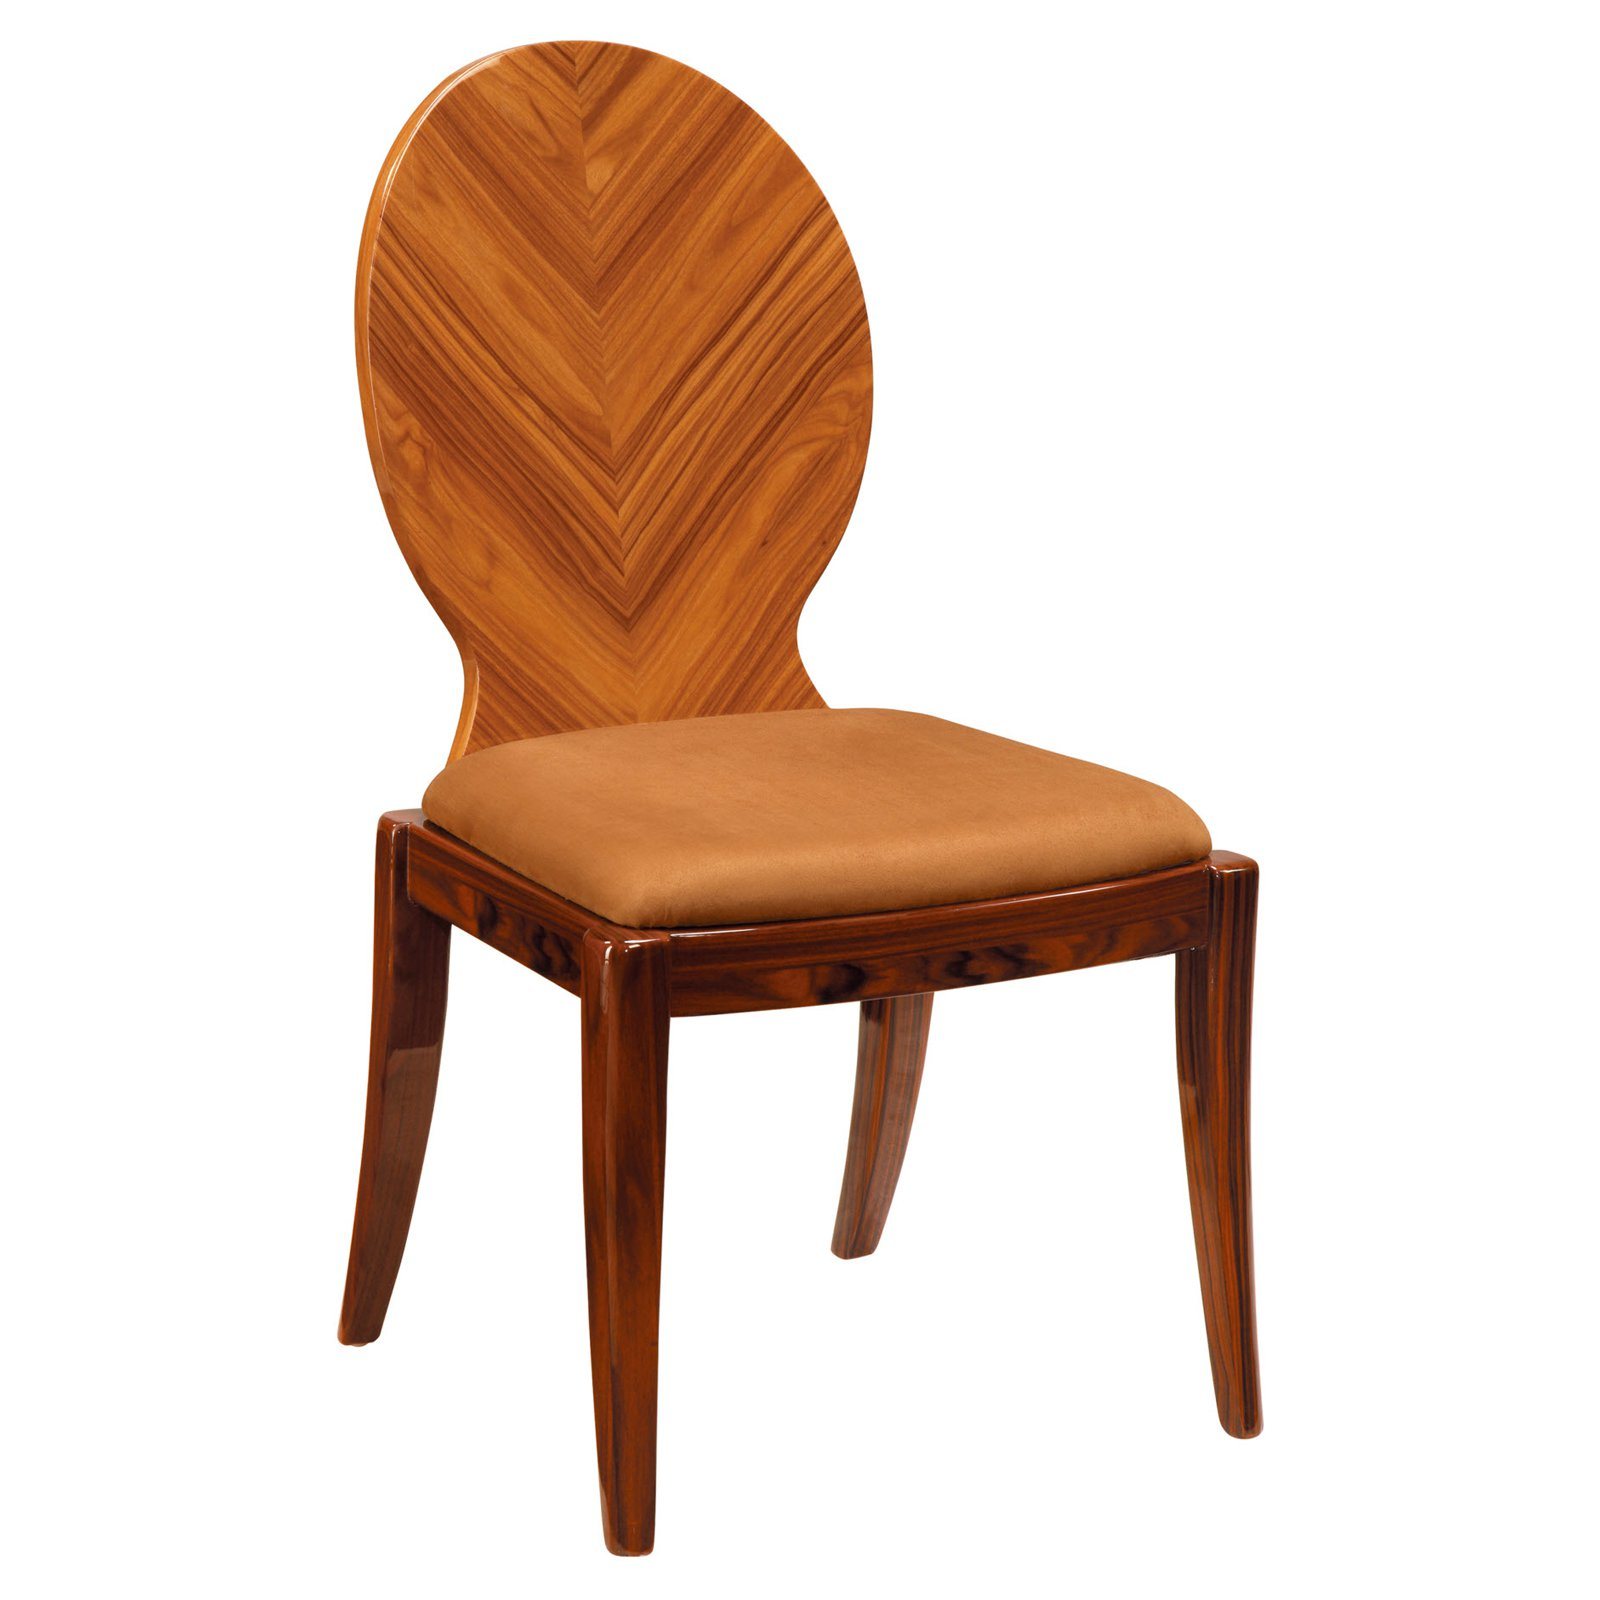 Untique Design Restaurant Furniture Wood Restaurant Chair for Sale